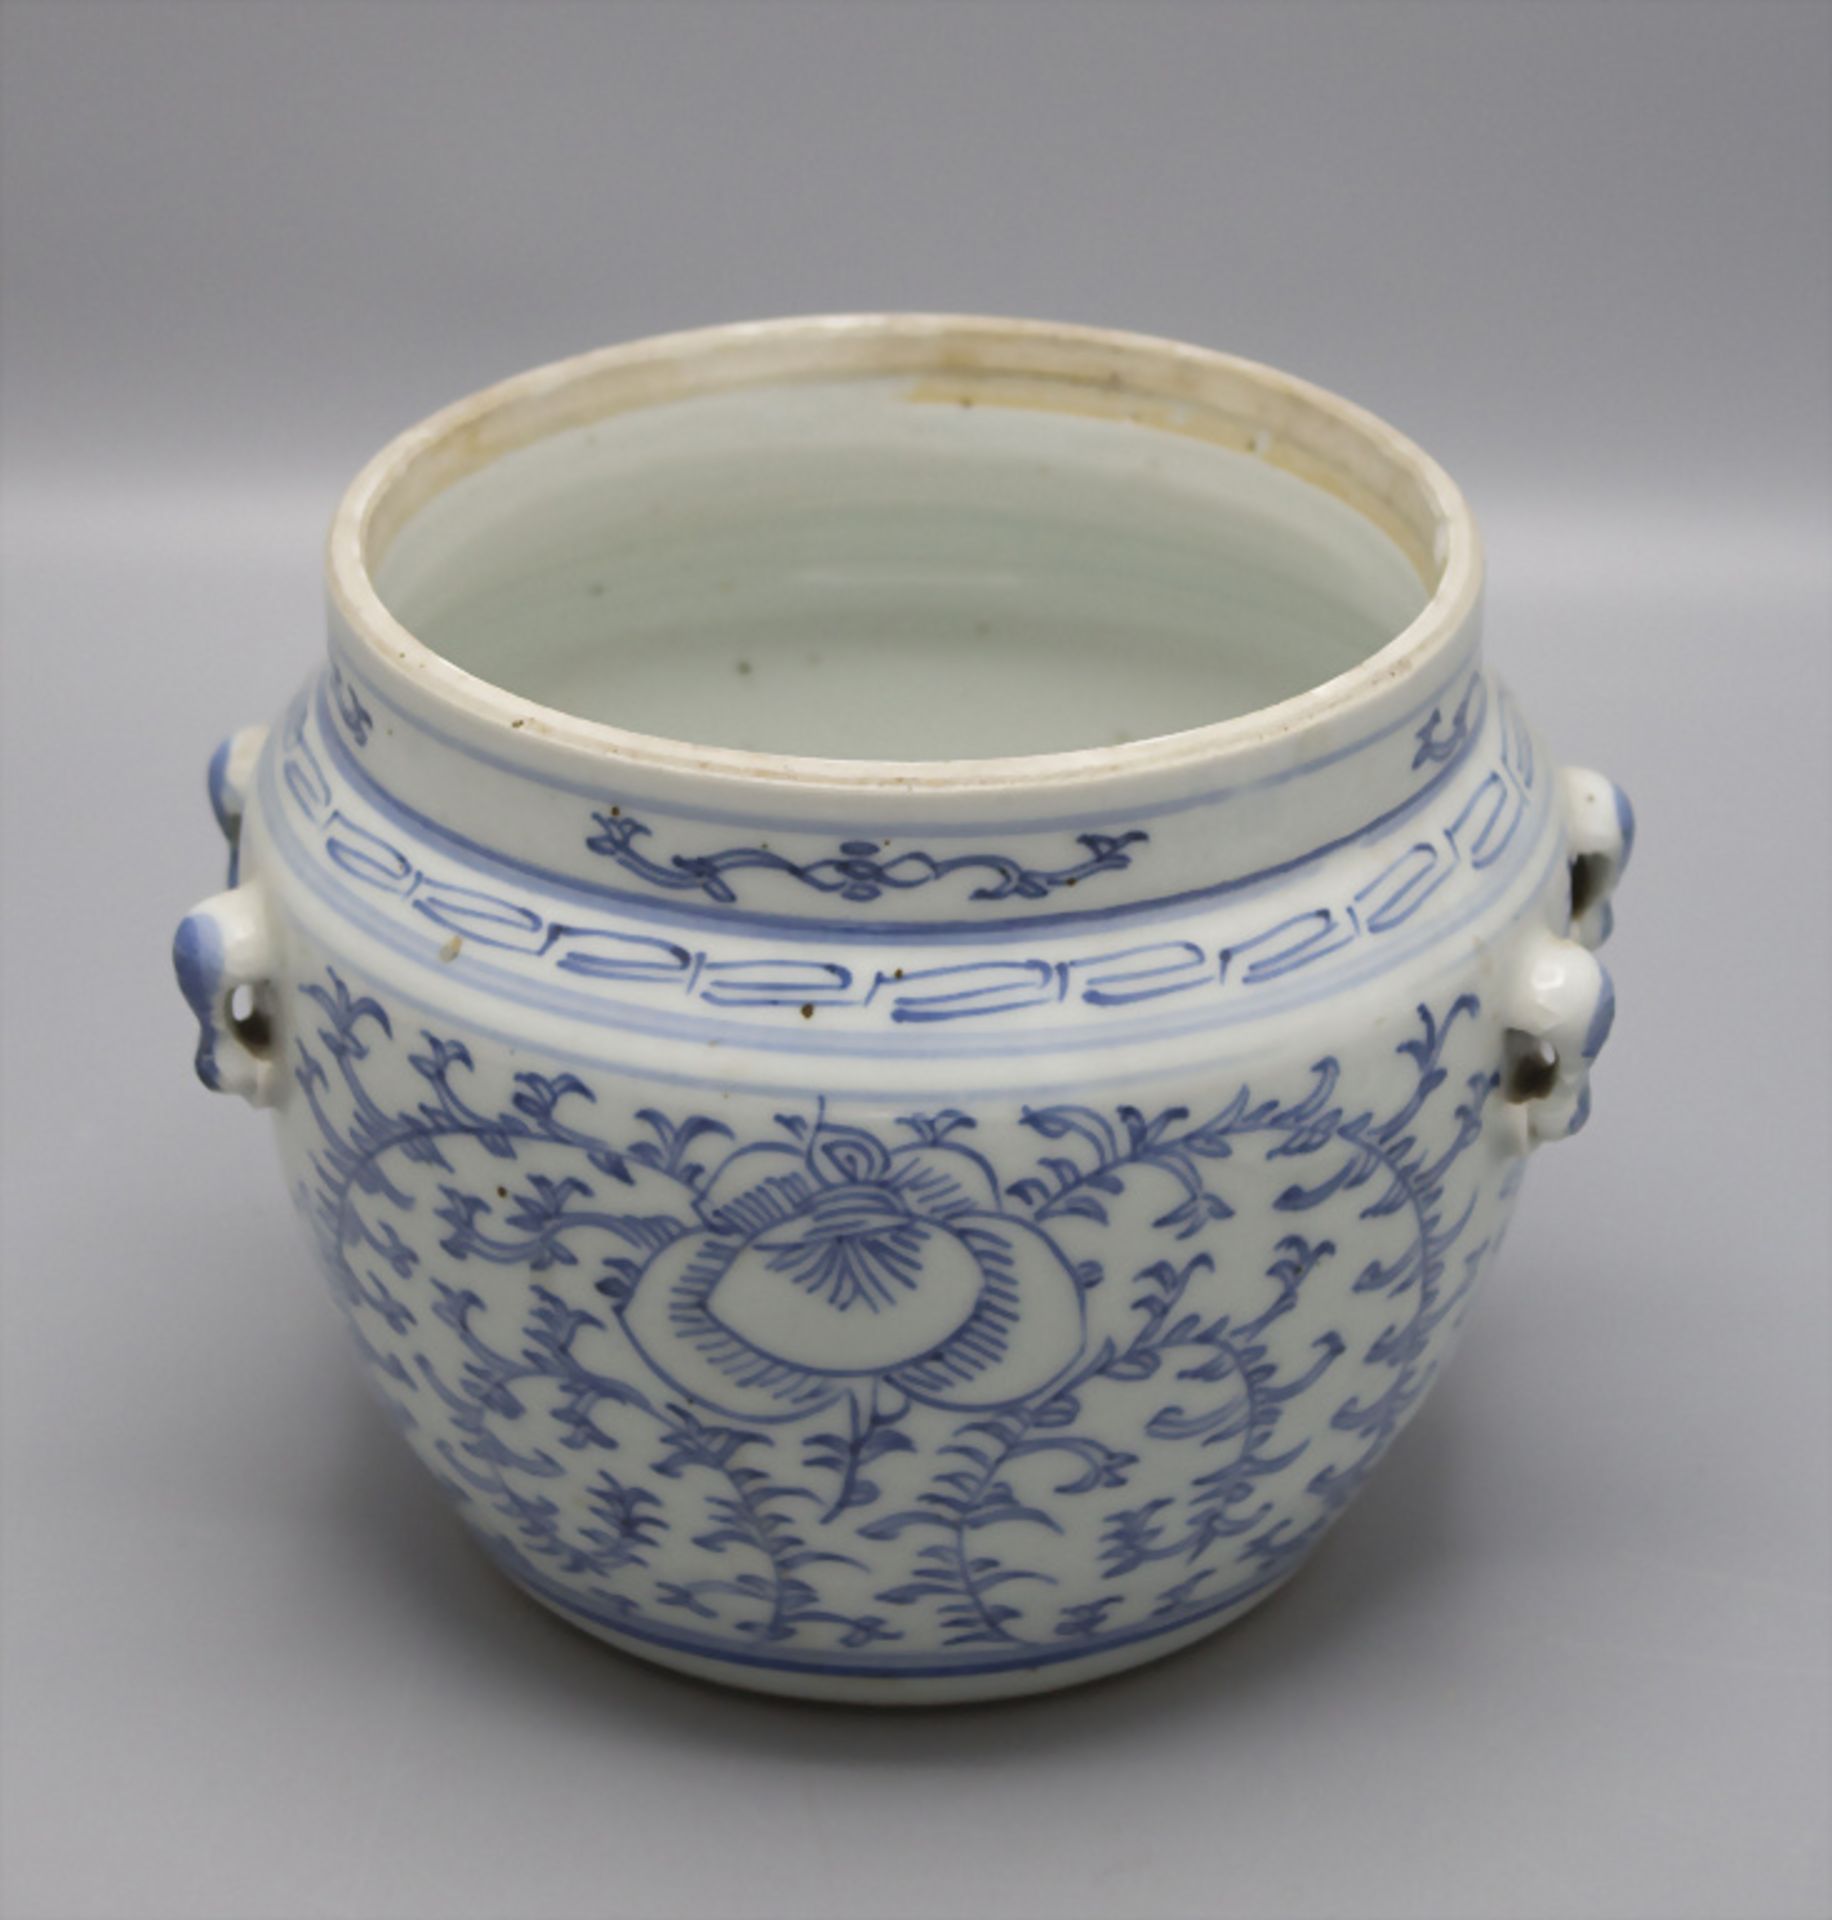 Porzellan Ingwertopf / A porcelain ginger pot, China - Image 3 of 6